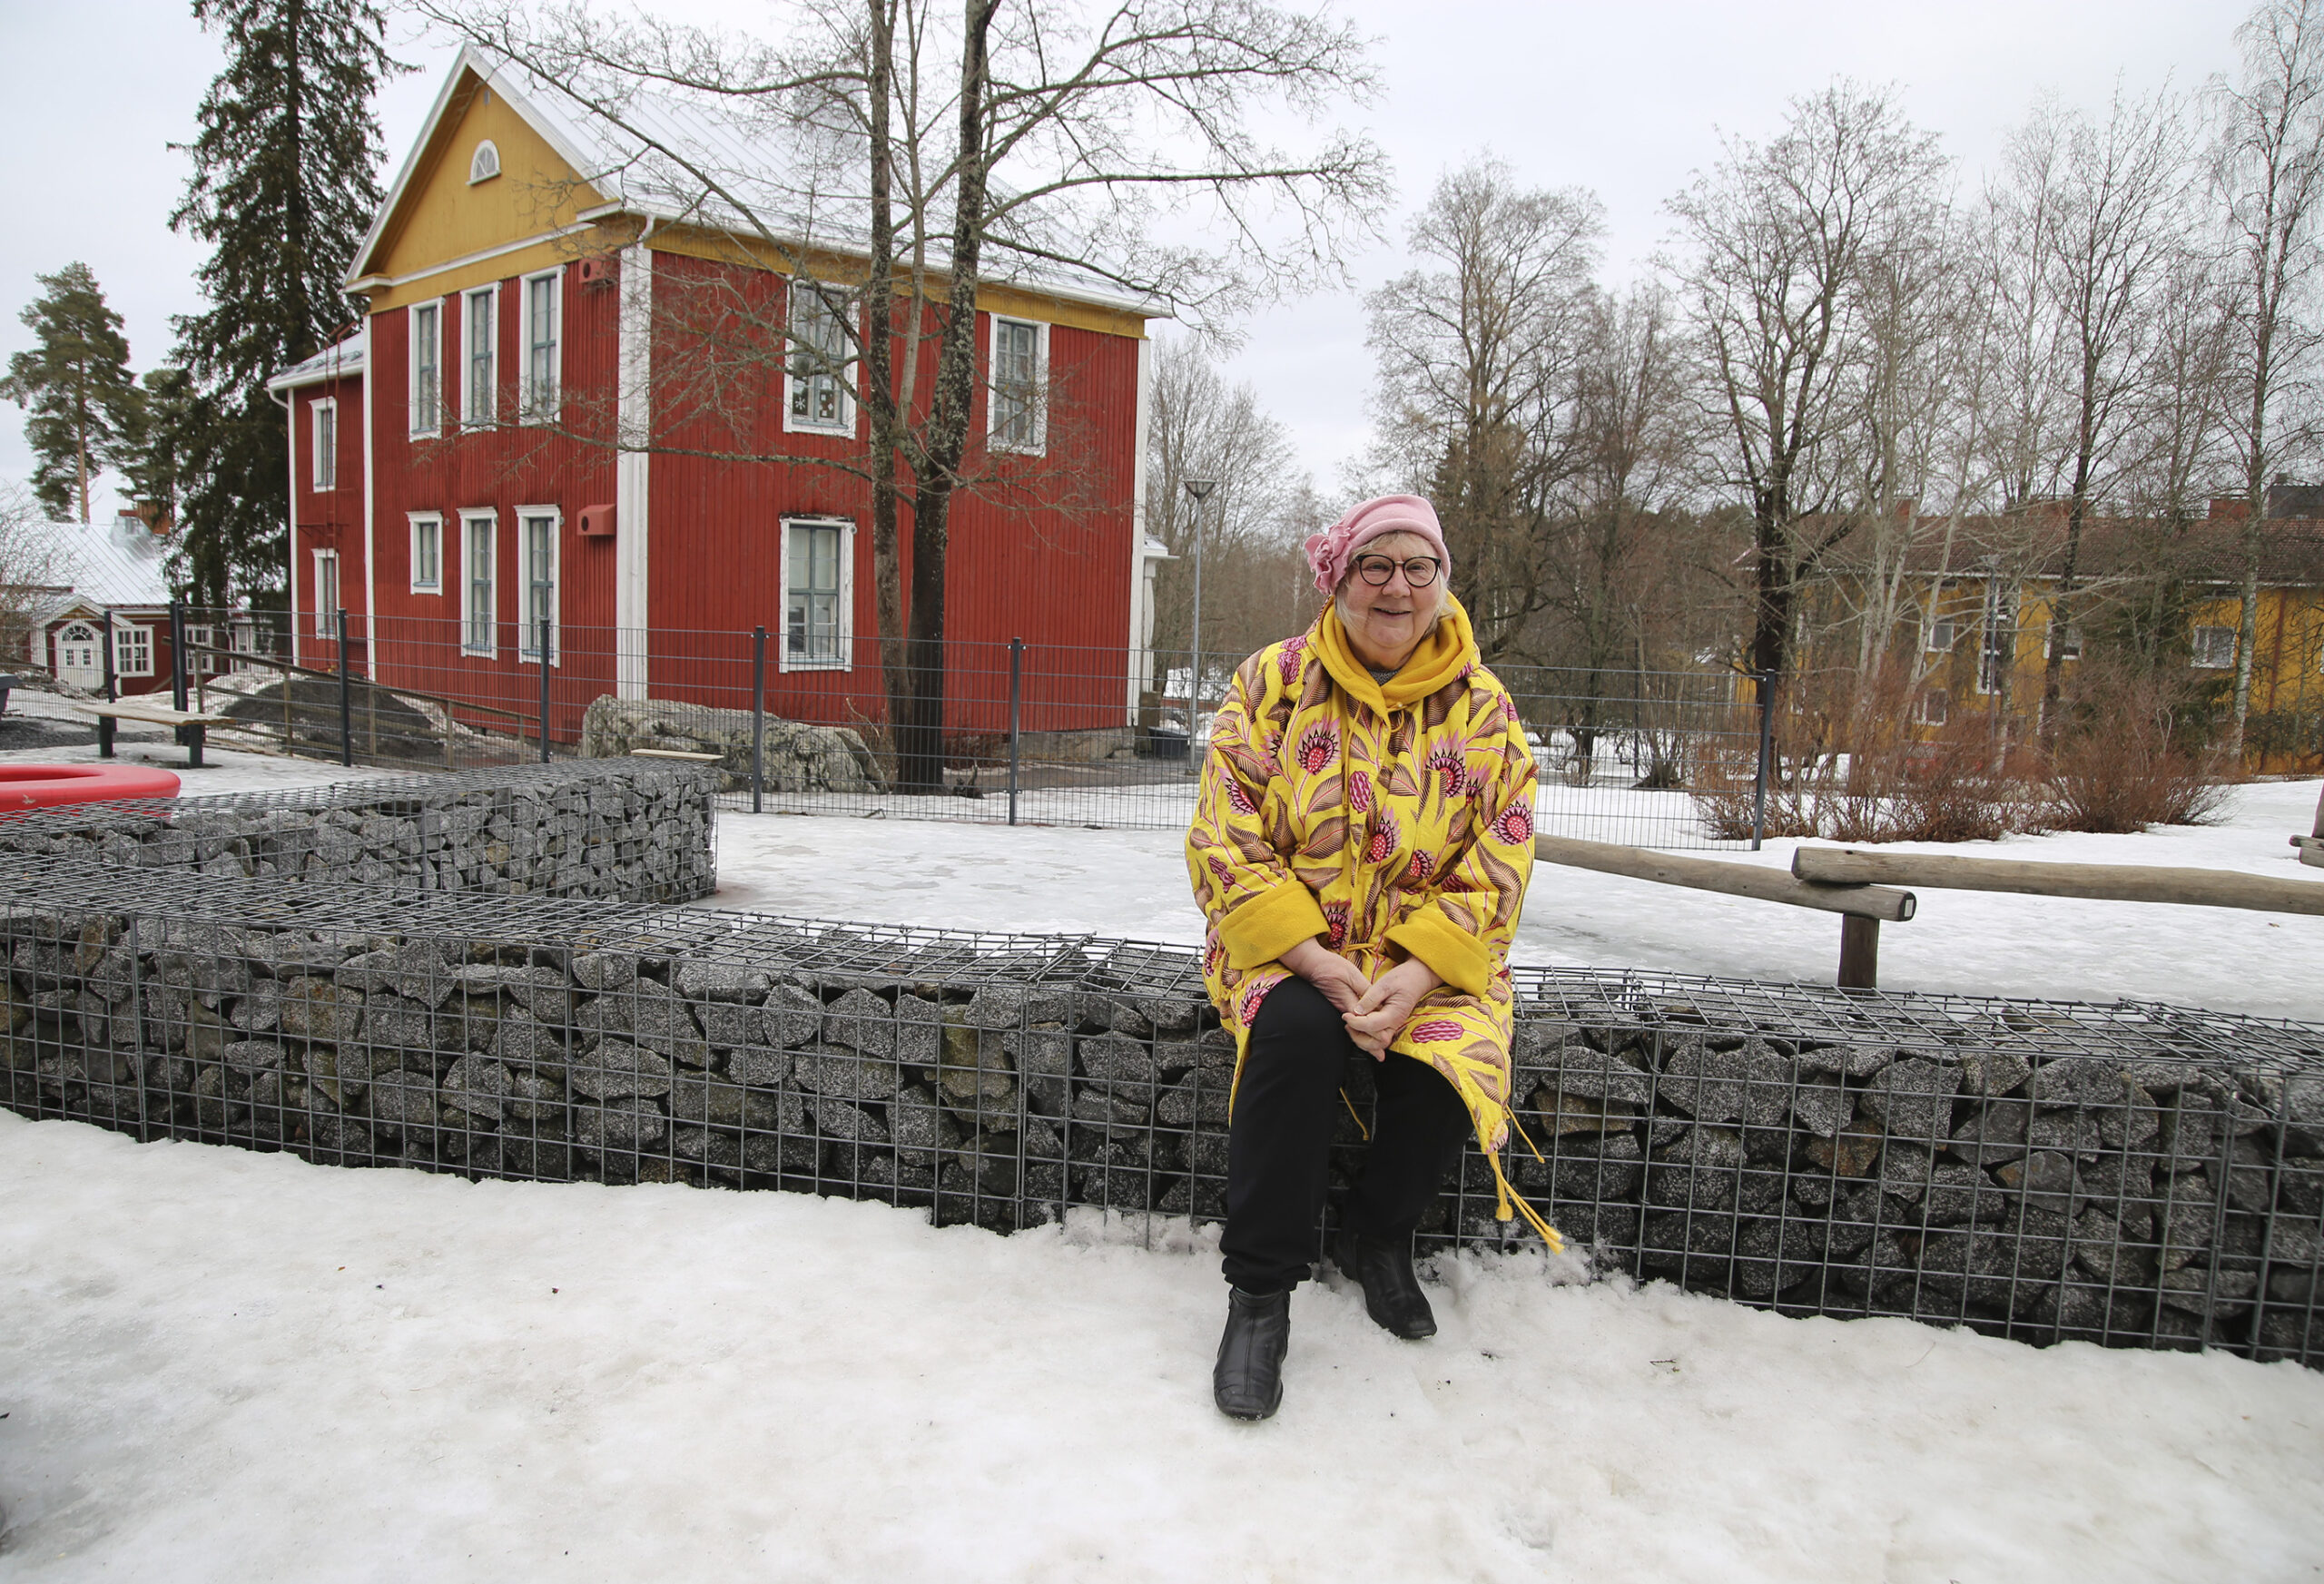 Kirjailija Anneli Kanto vieraili lapsuuden maisemassa Nuolialan koulun pihapiirissä: ”Olen aina ollut jotenkin välissä, Pirkkalassakin olimme sivullisia” – kertoo nyt mikä on seuraavan historiallisen romaanin aihe